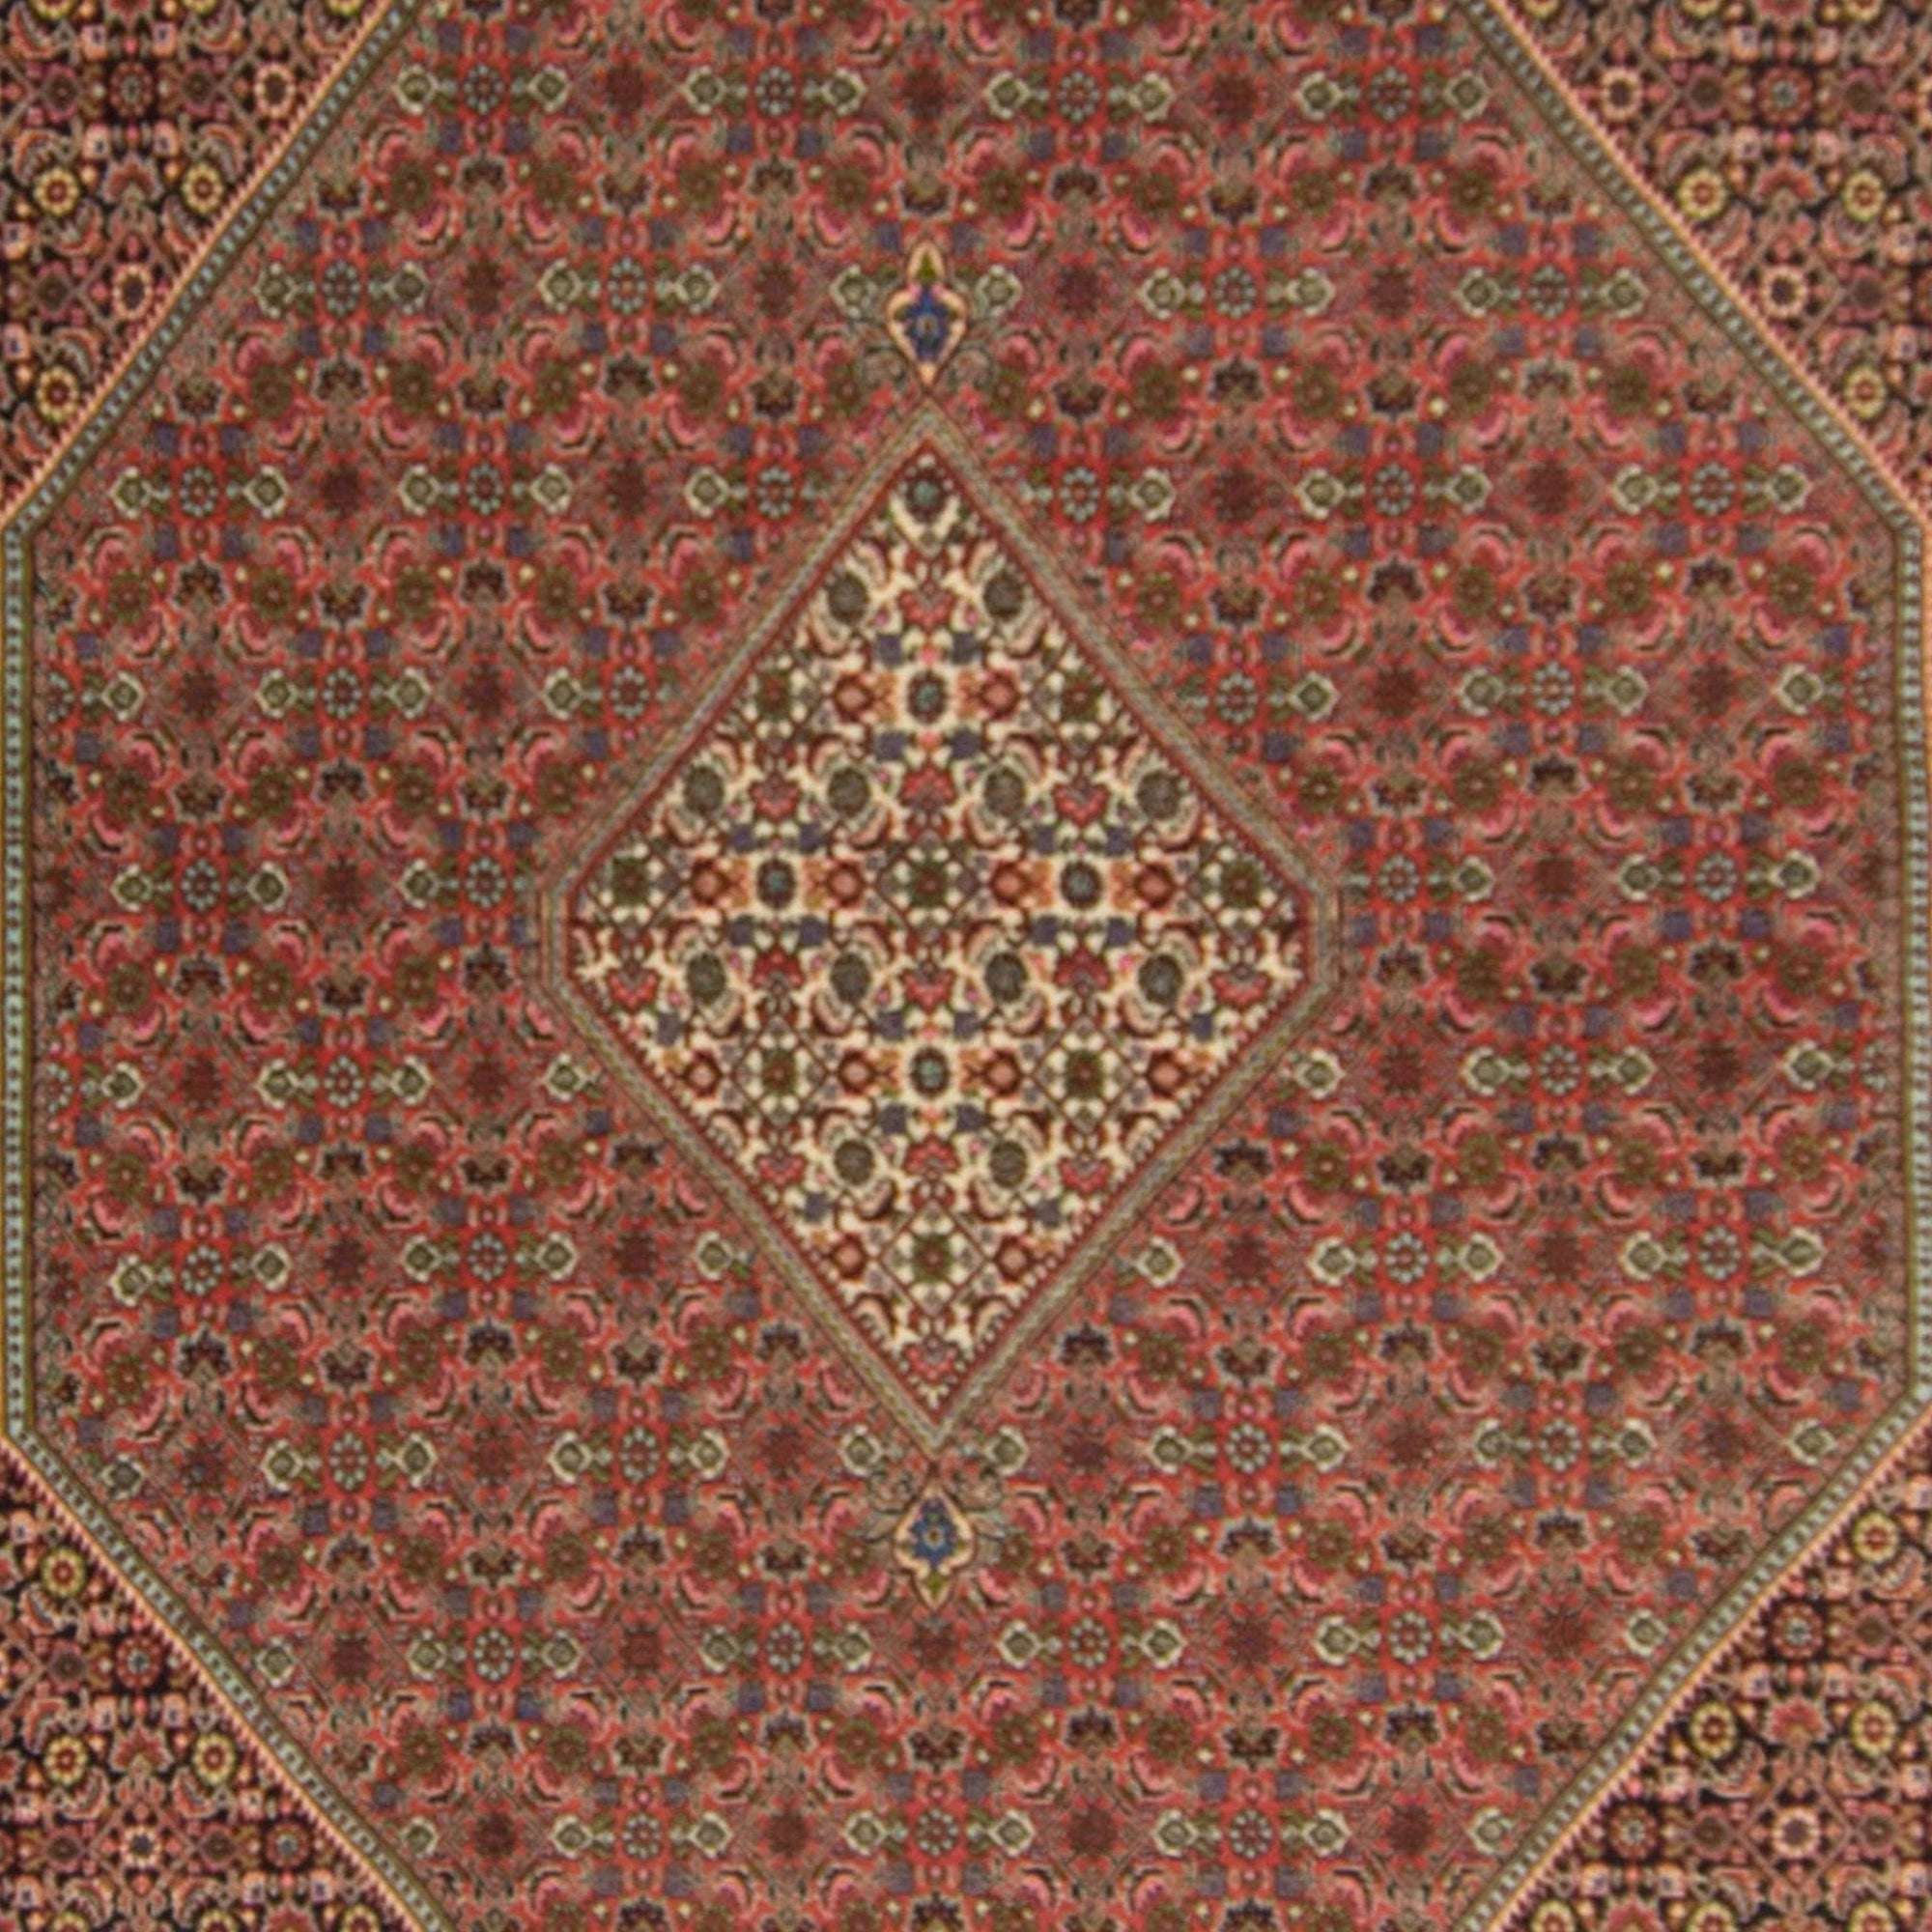 Super Fine Hand-knotted Persian Wool Bijar Rug 266cm x 335cm